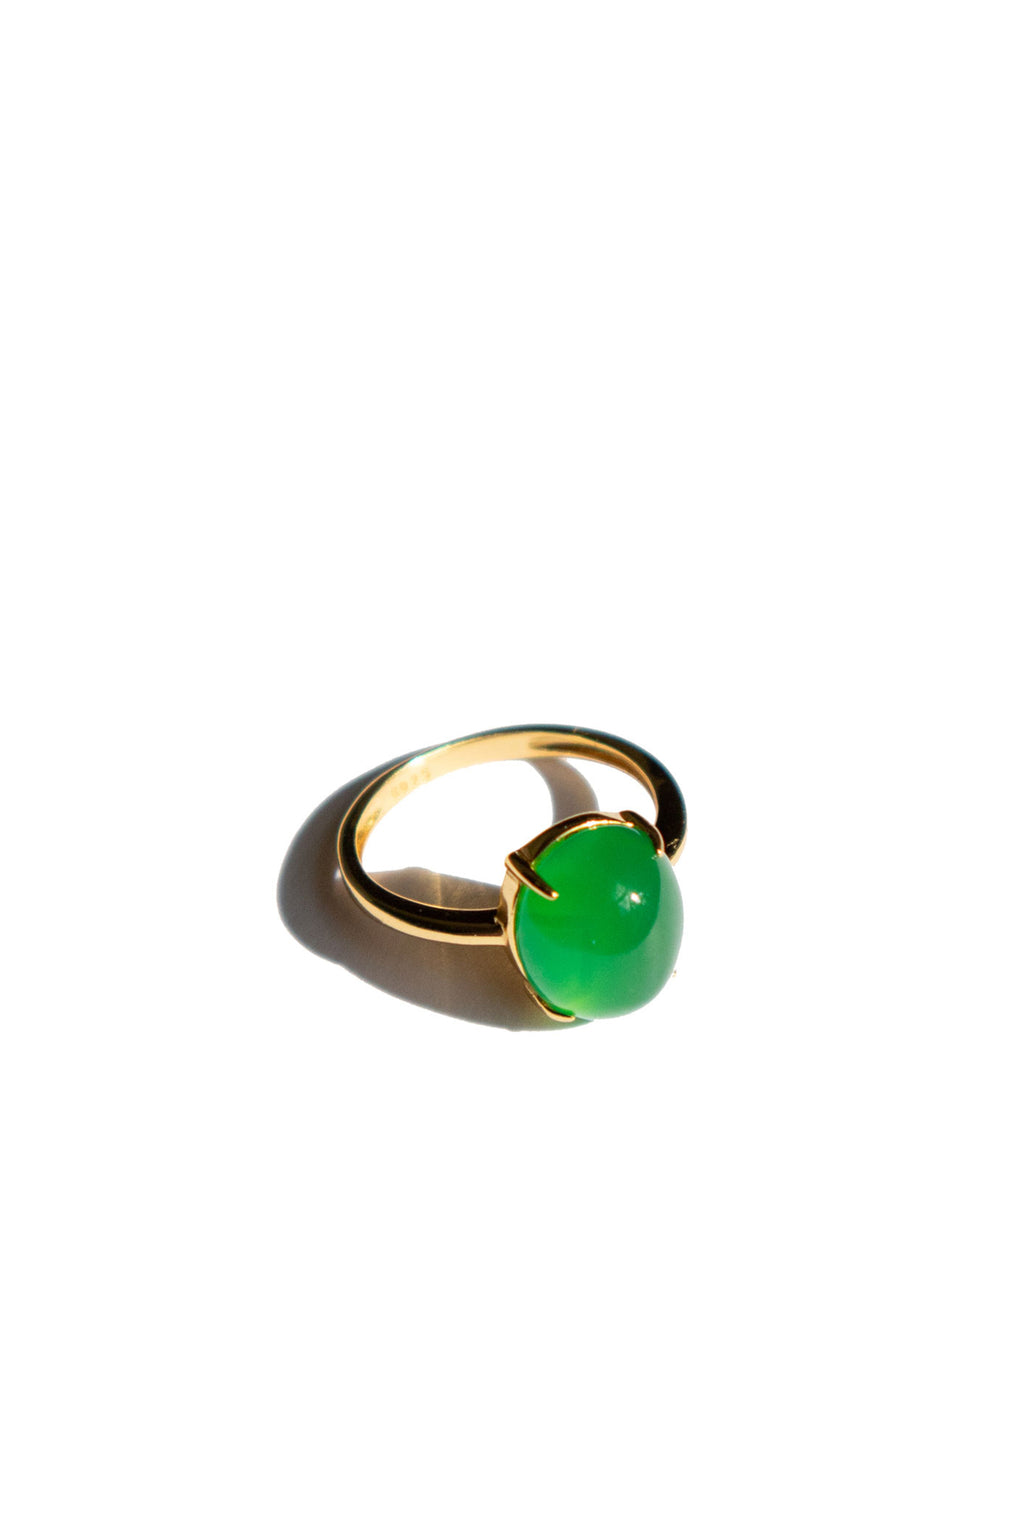 seree-green-jade-stone-ring-14k-gold-plated-band